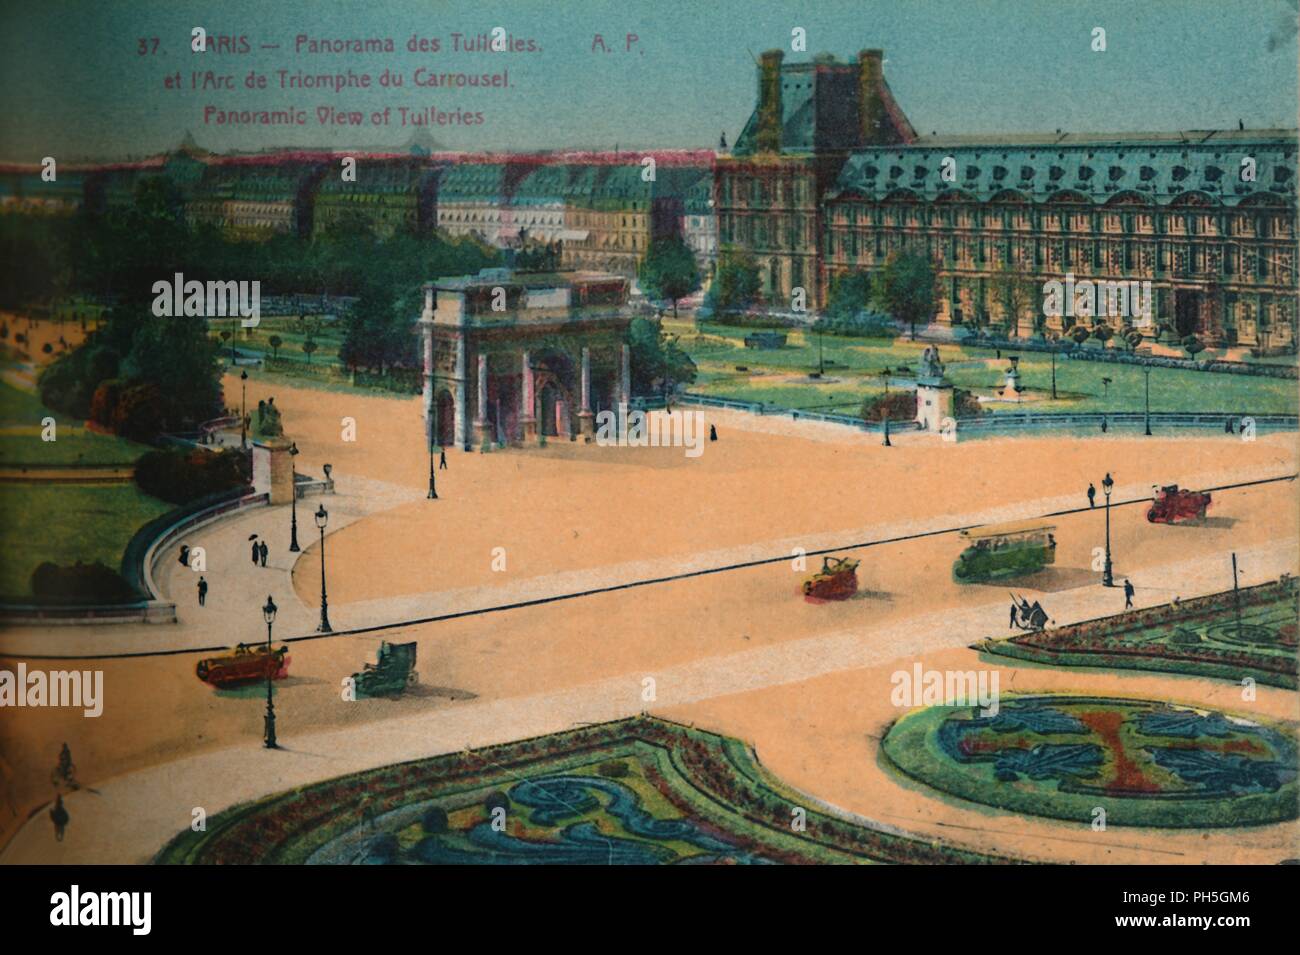 Vista panorámica de las Tullerías y el Arc de triomphe du Carrousel, París, c1920. Artista: Desconocido. Foto de stock